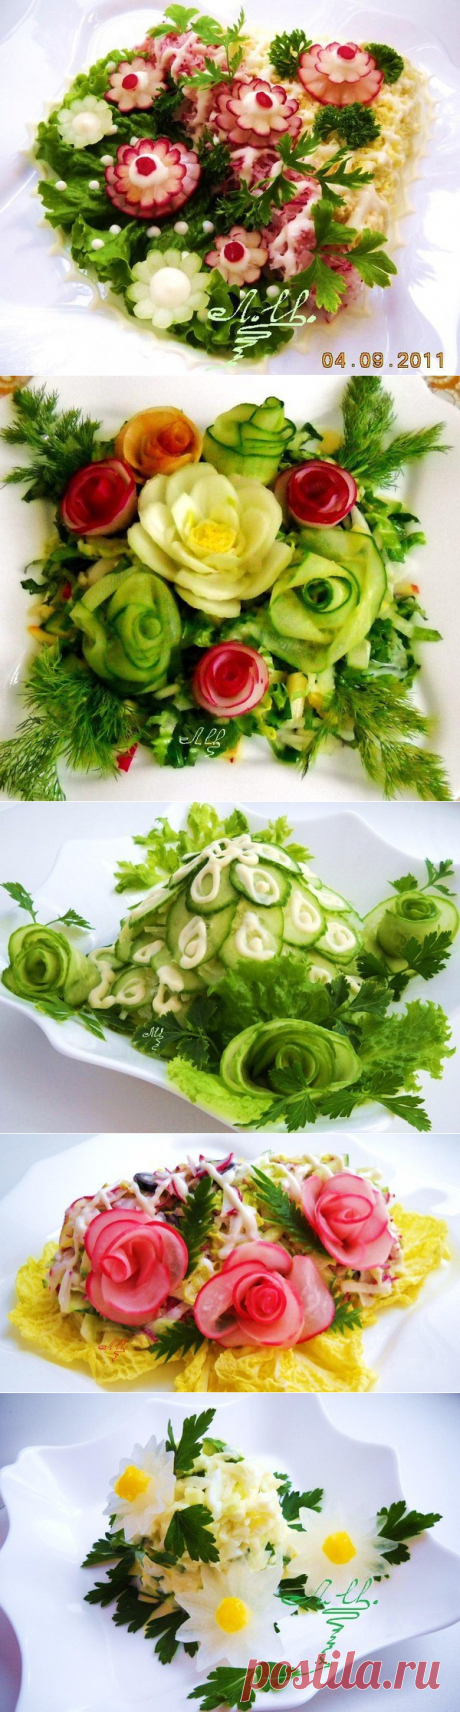 Идеи подачи салатиков.